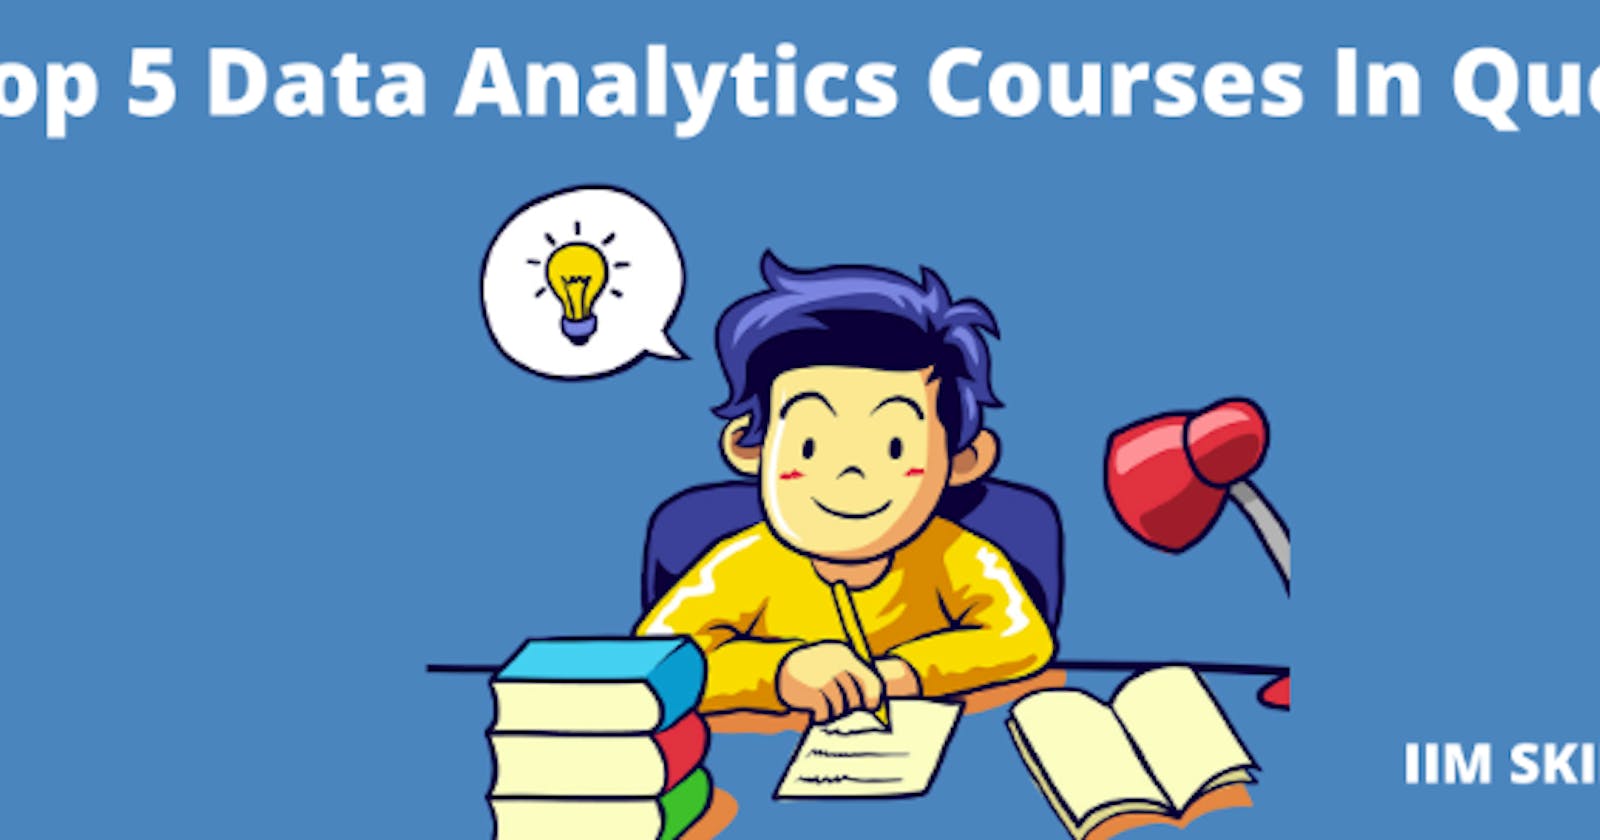 Data Analytics Courses In Queens